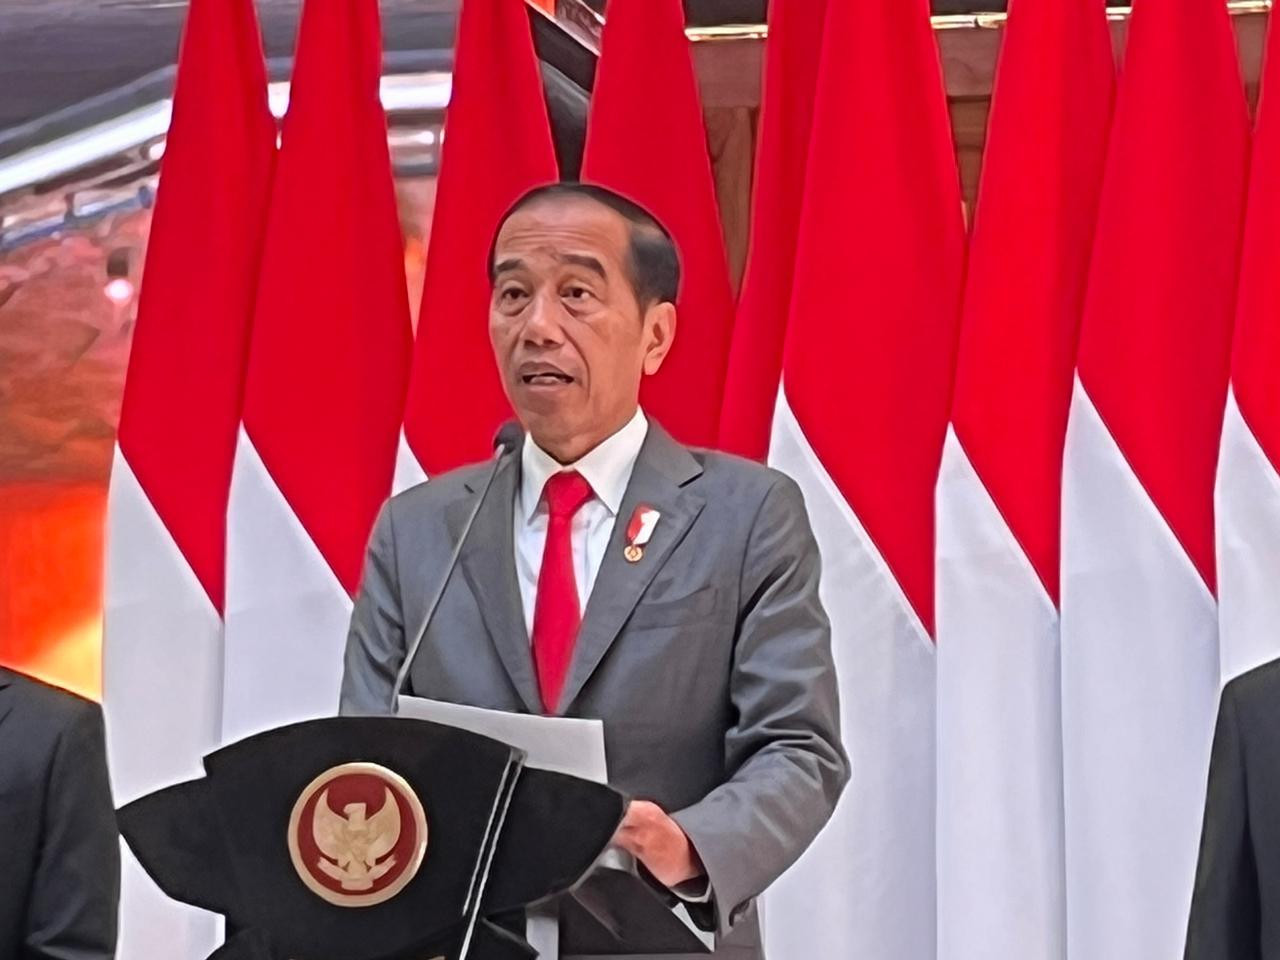 Harga Beras Terus Melonjak, Jokowi: Ini Mau Lebaran - JPNN.com